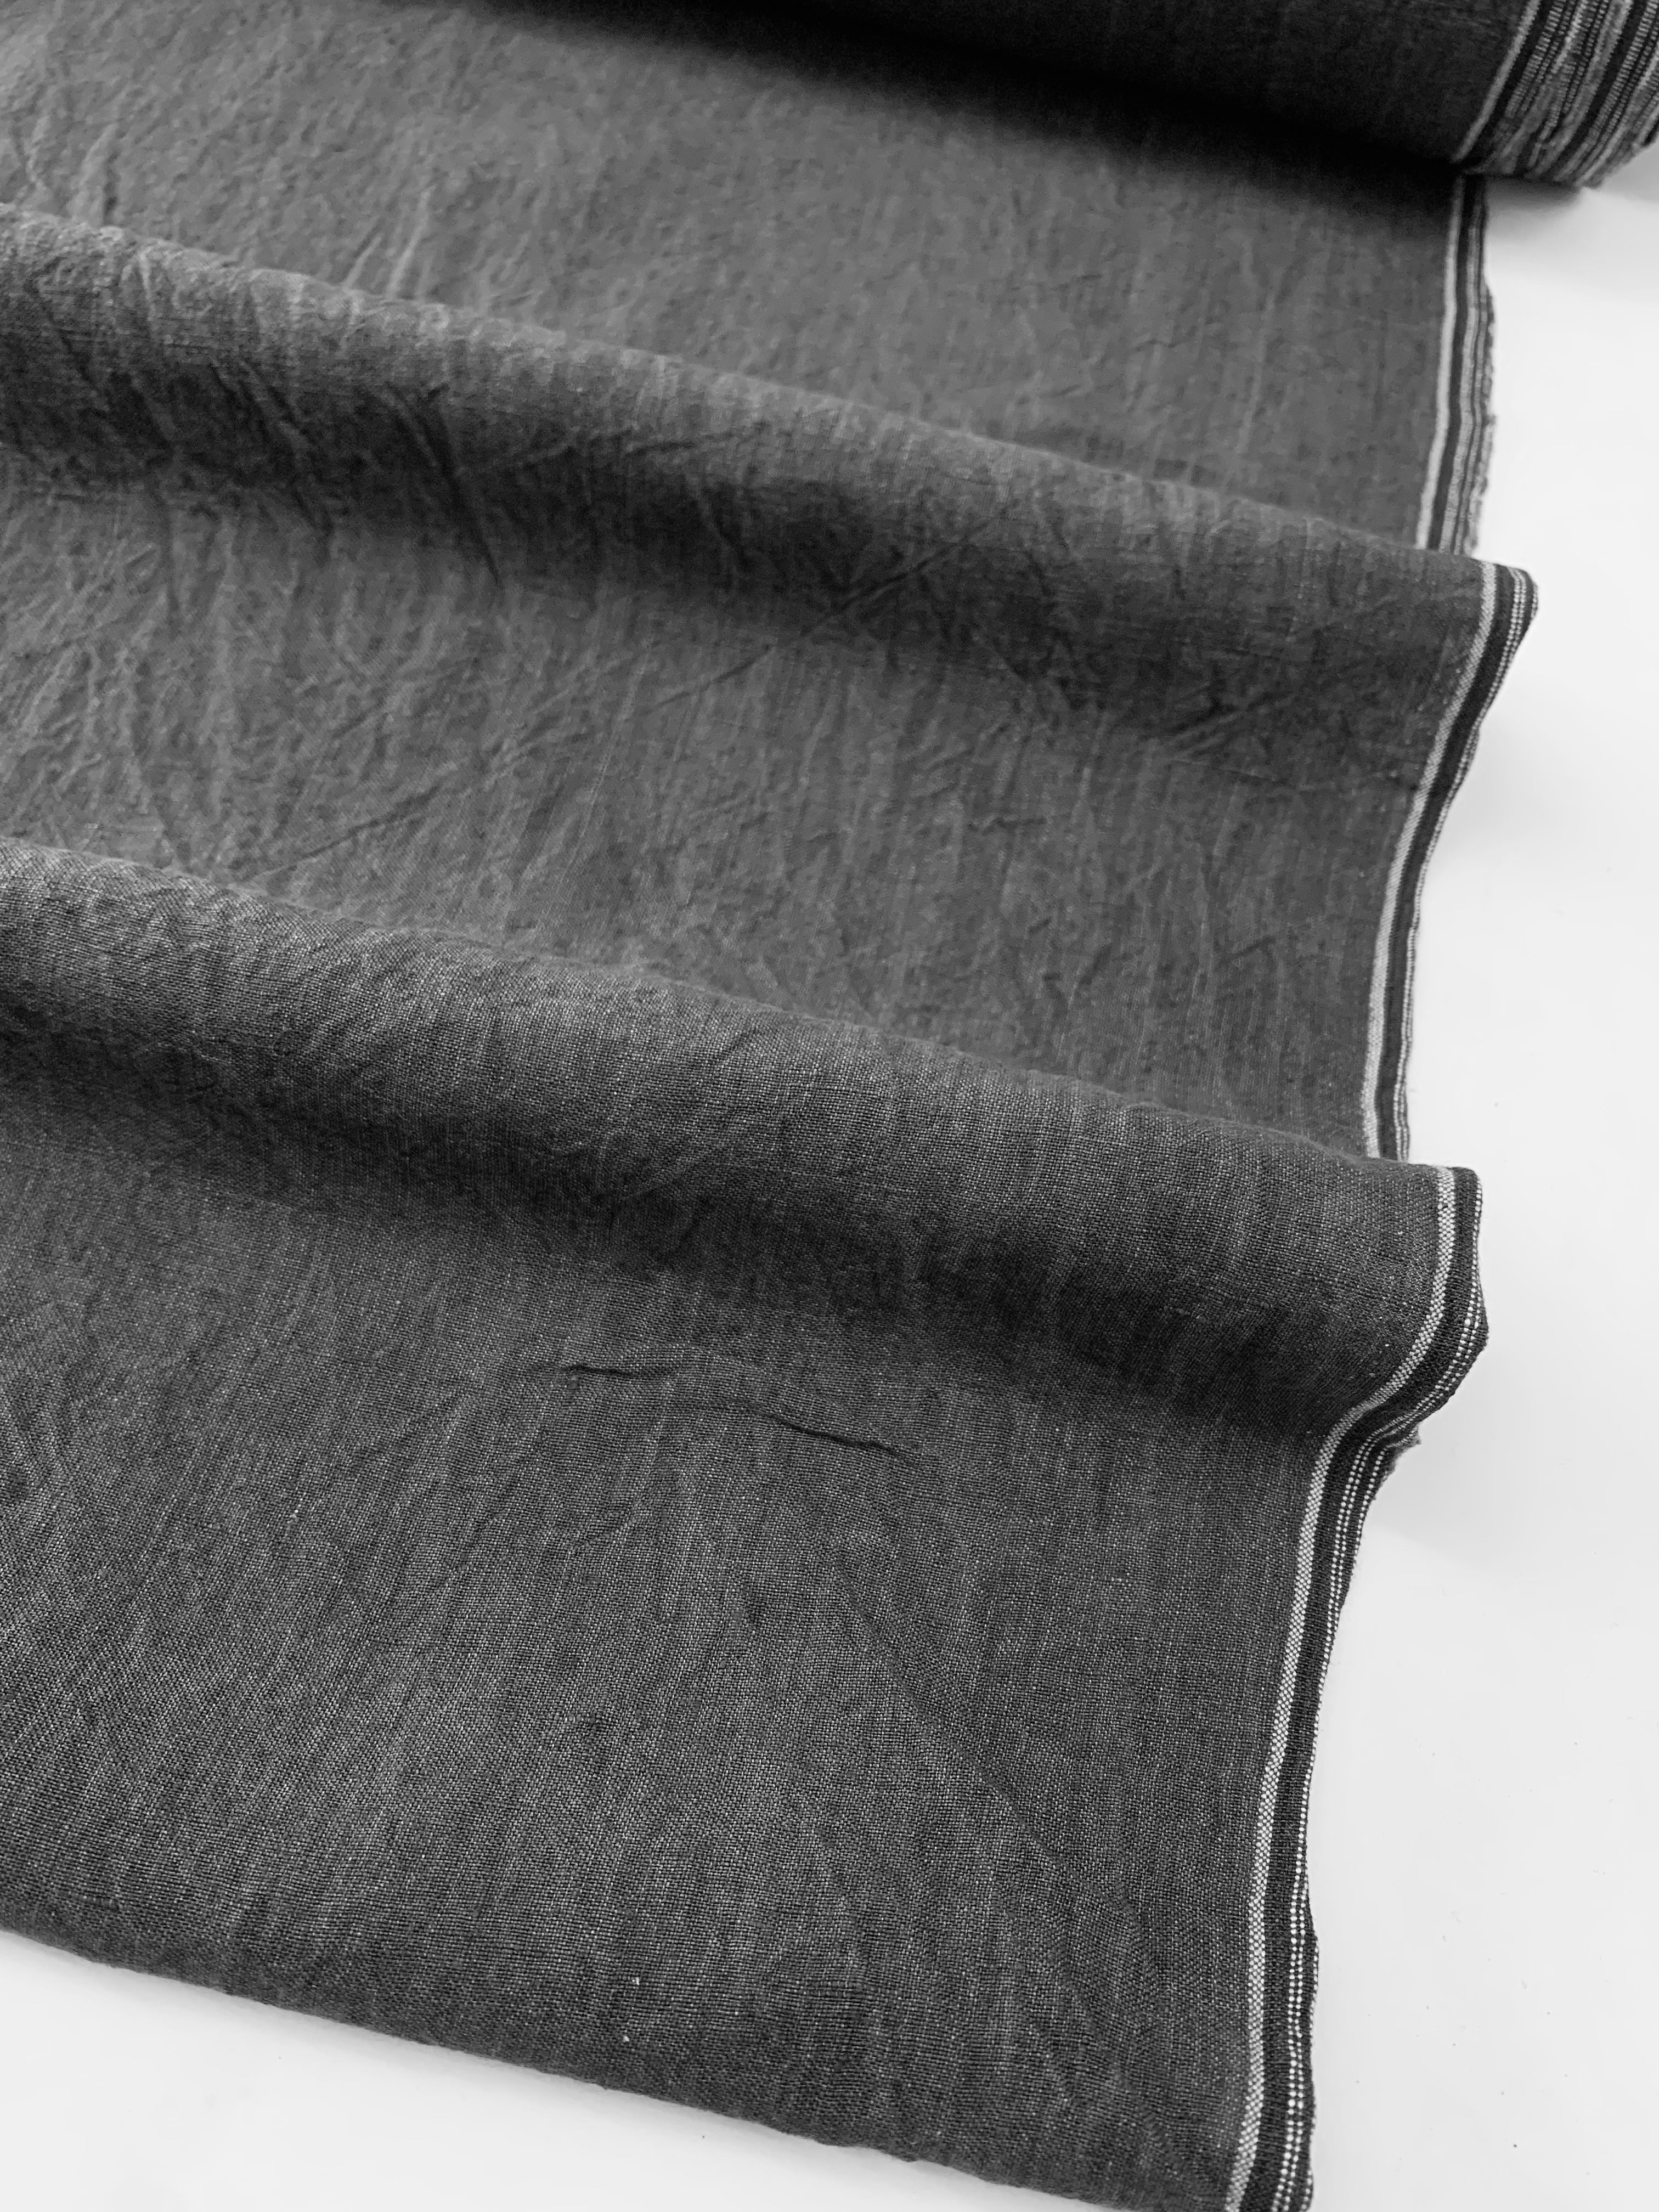 ANTONIA: Vintage Washer Finish Linen in Asphalt